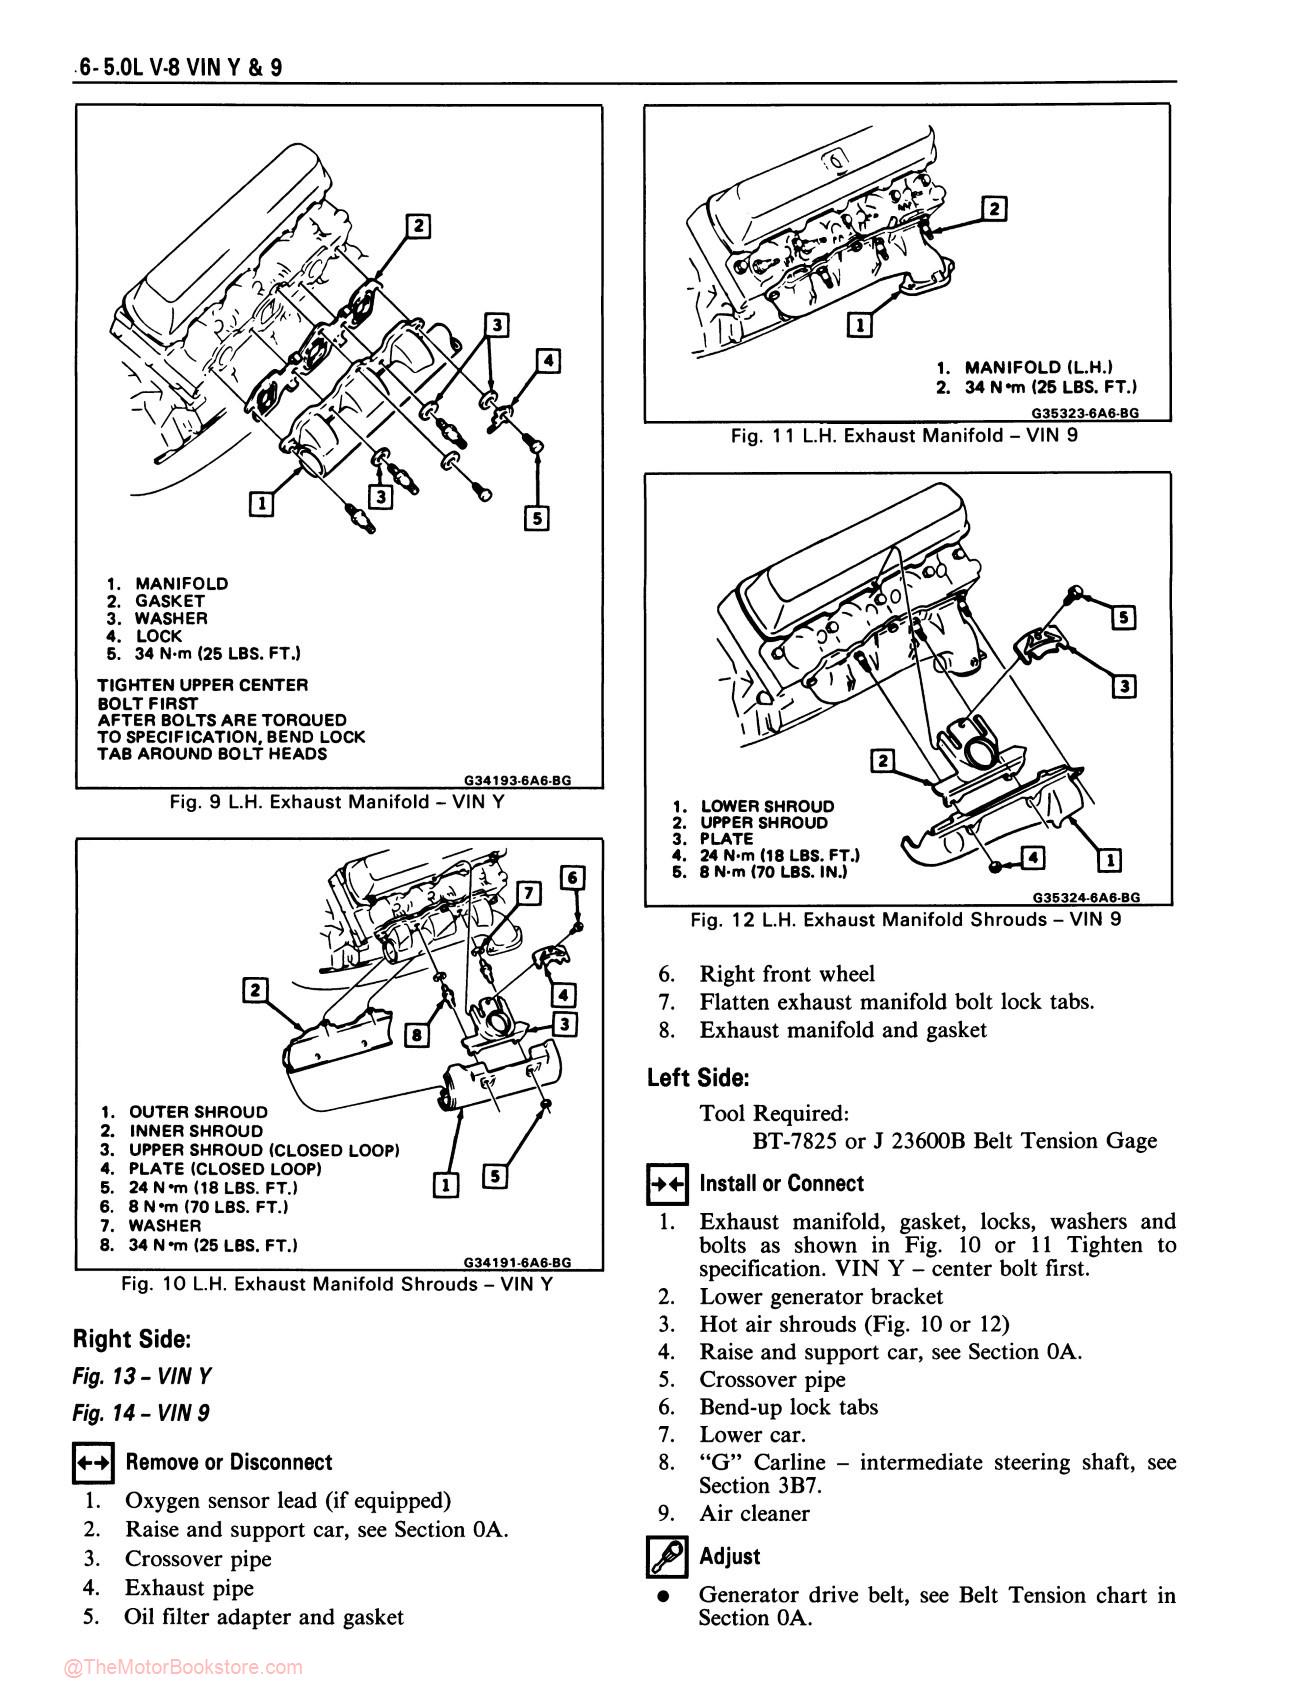 1987 Oldsmobile Service Repair Manual - Sample Page 1